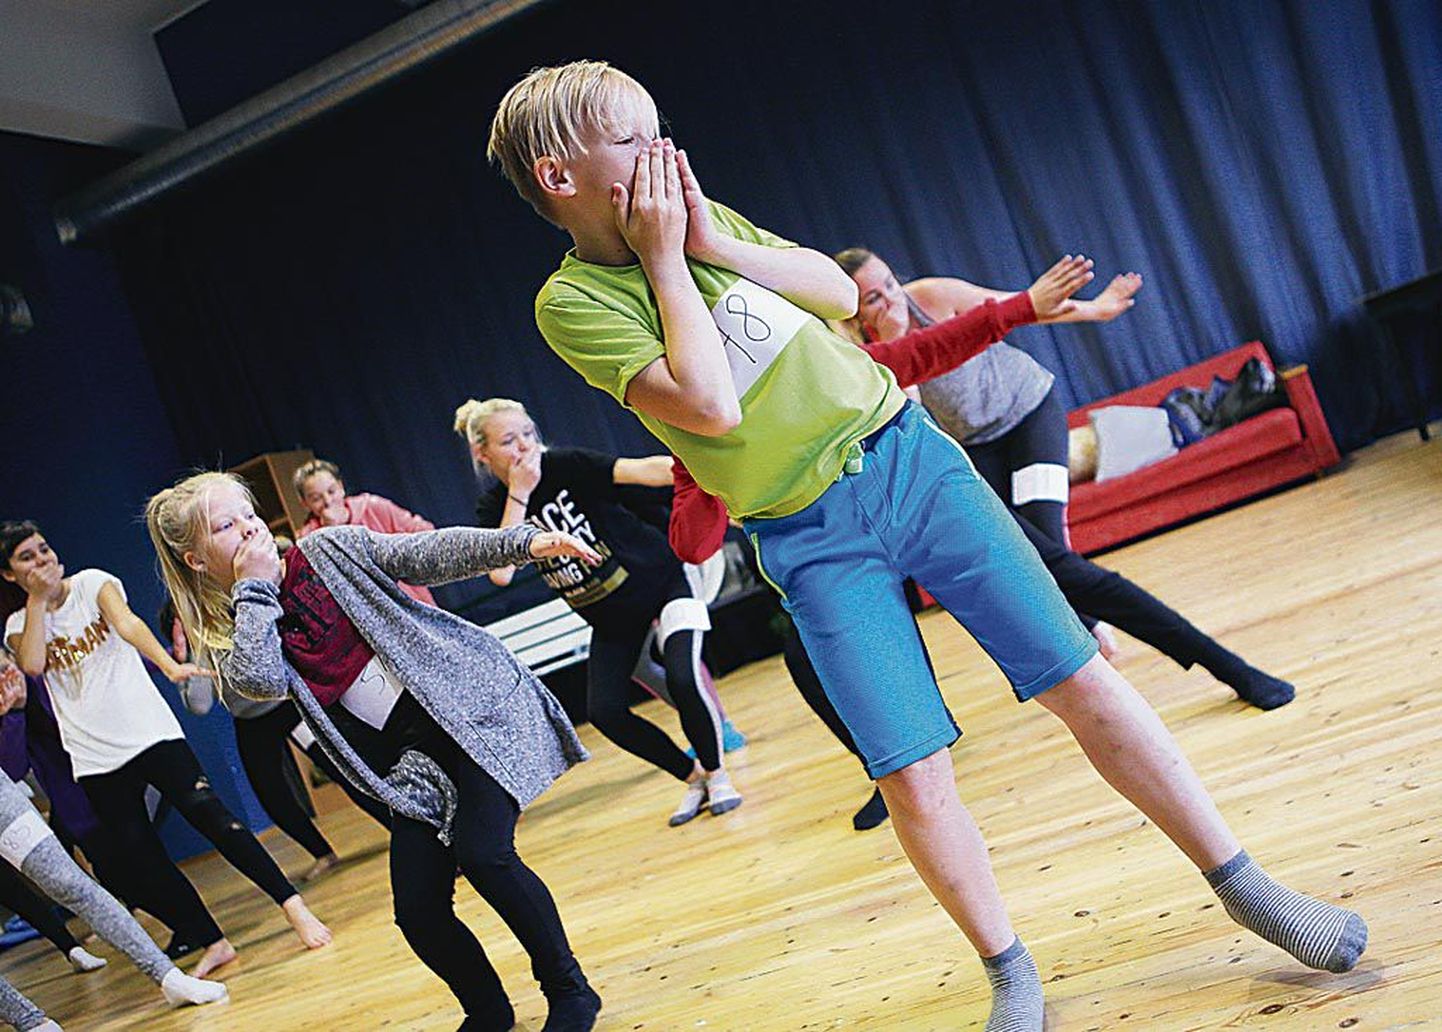 Lavastuse koreograaf Rauno Zubko oli üllatunud, et Pärnus on nii palju hästi tantsivaid lapsi.